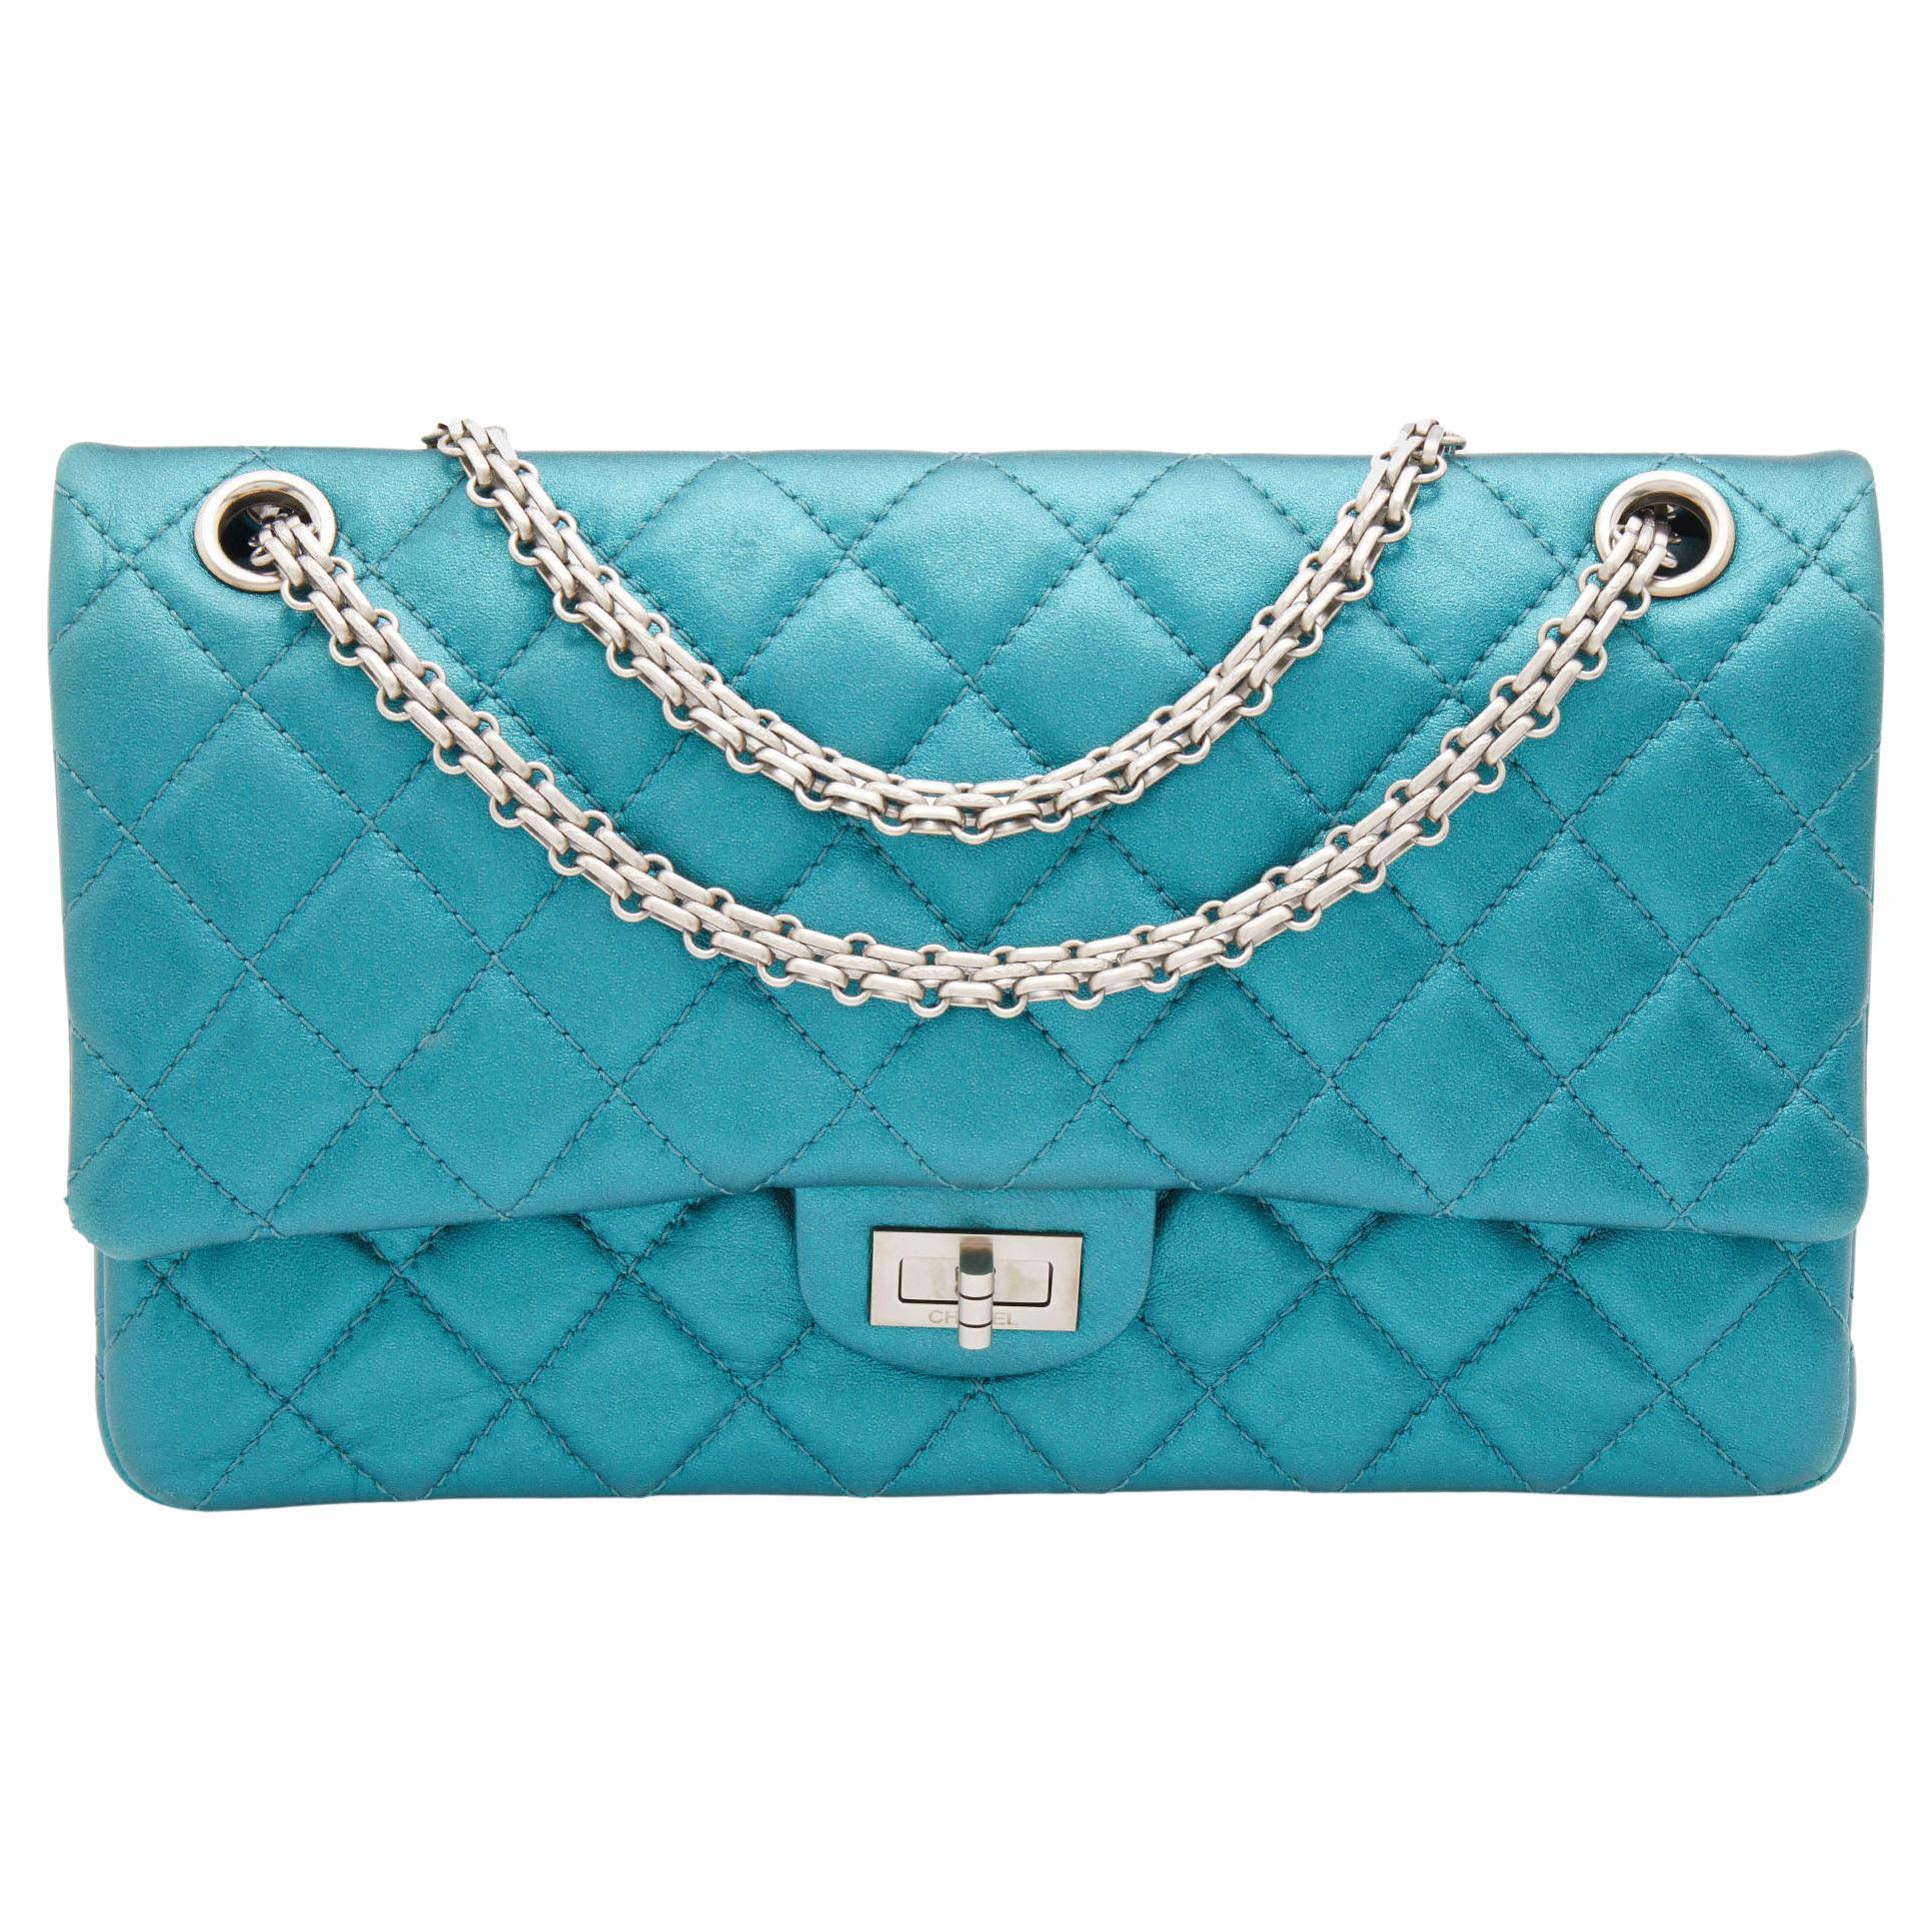 Chanel Teal Metallic Bag - For Sale on 1stDibs  chanel bag teal, teal chanel  bag, chanel teal bag